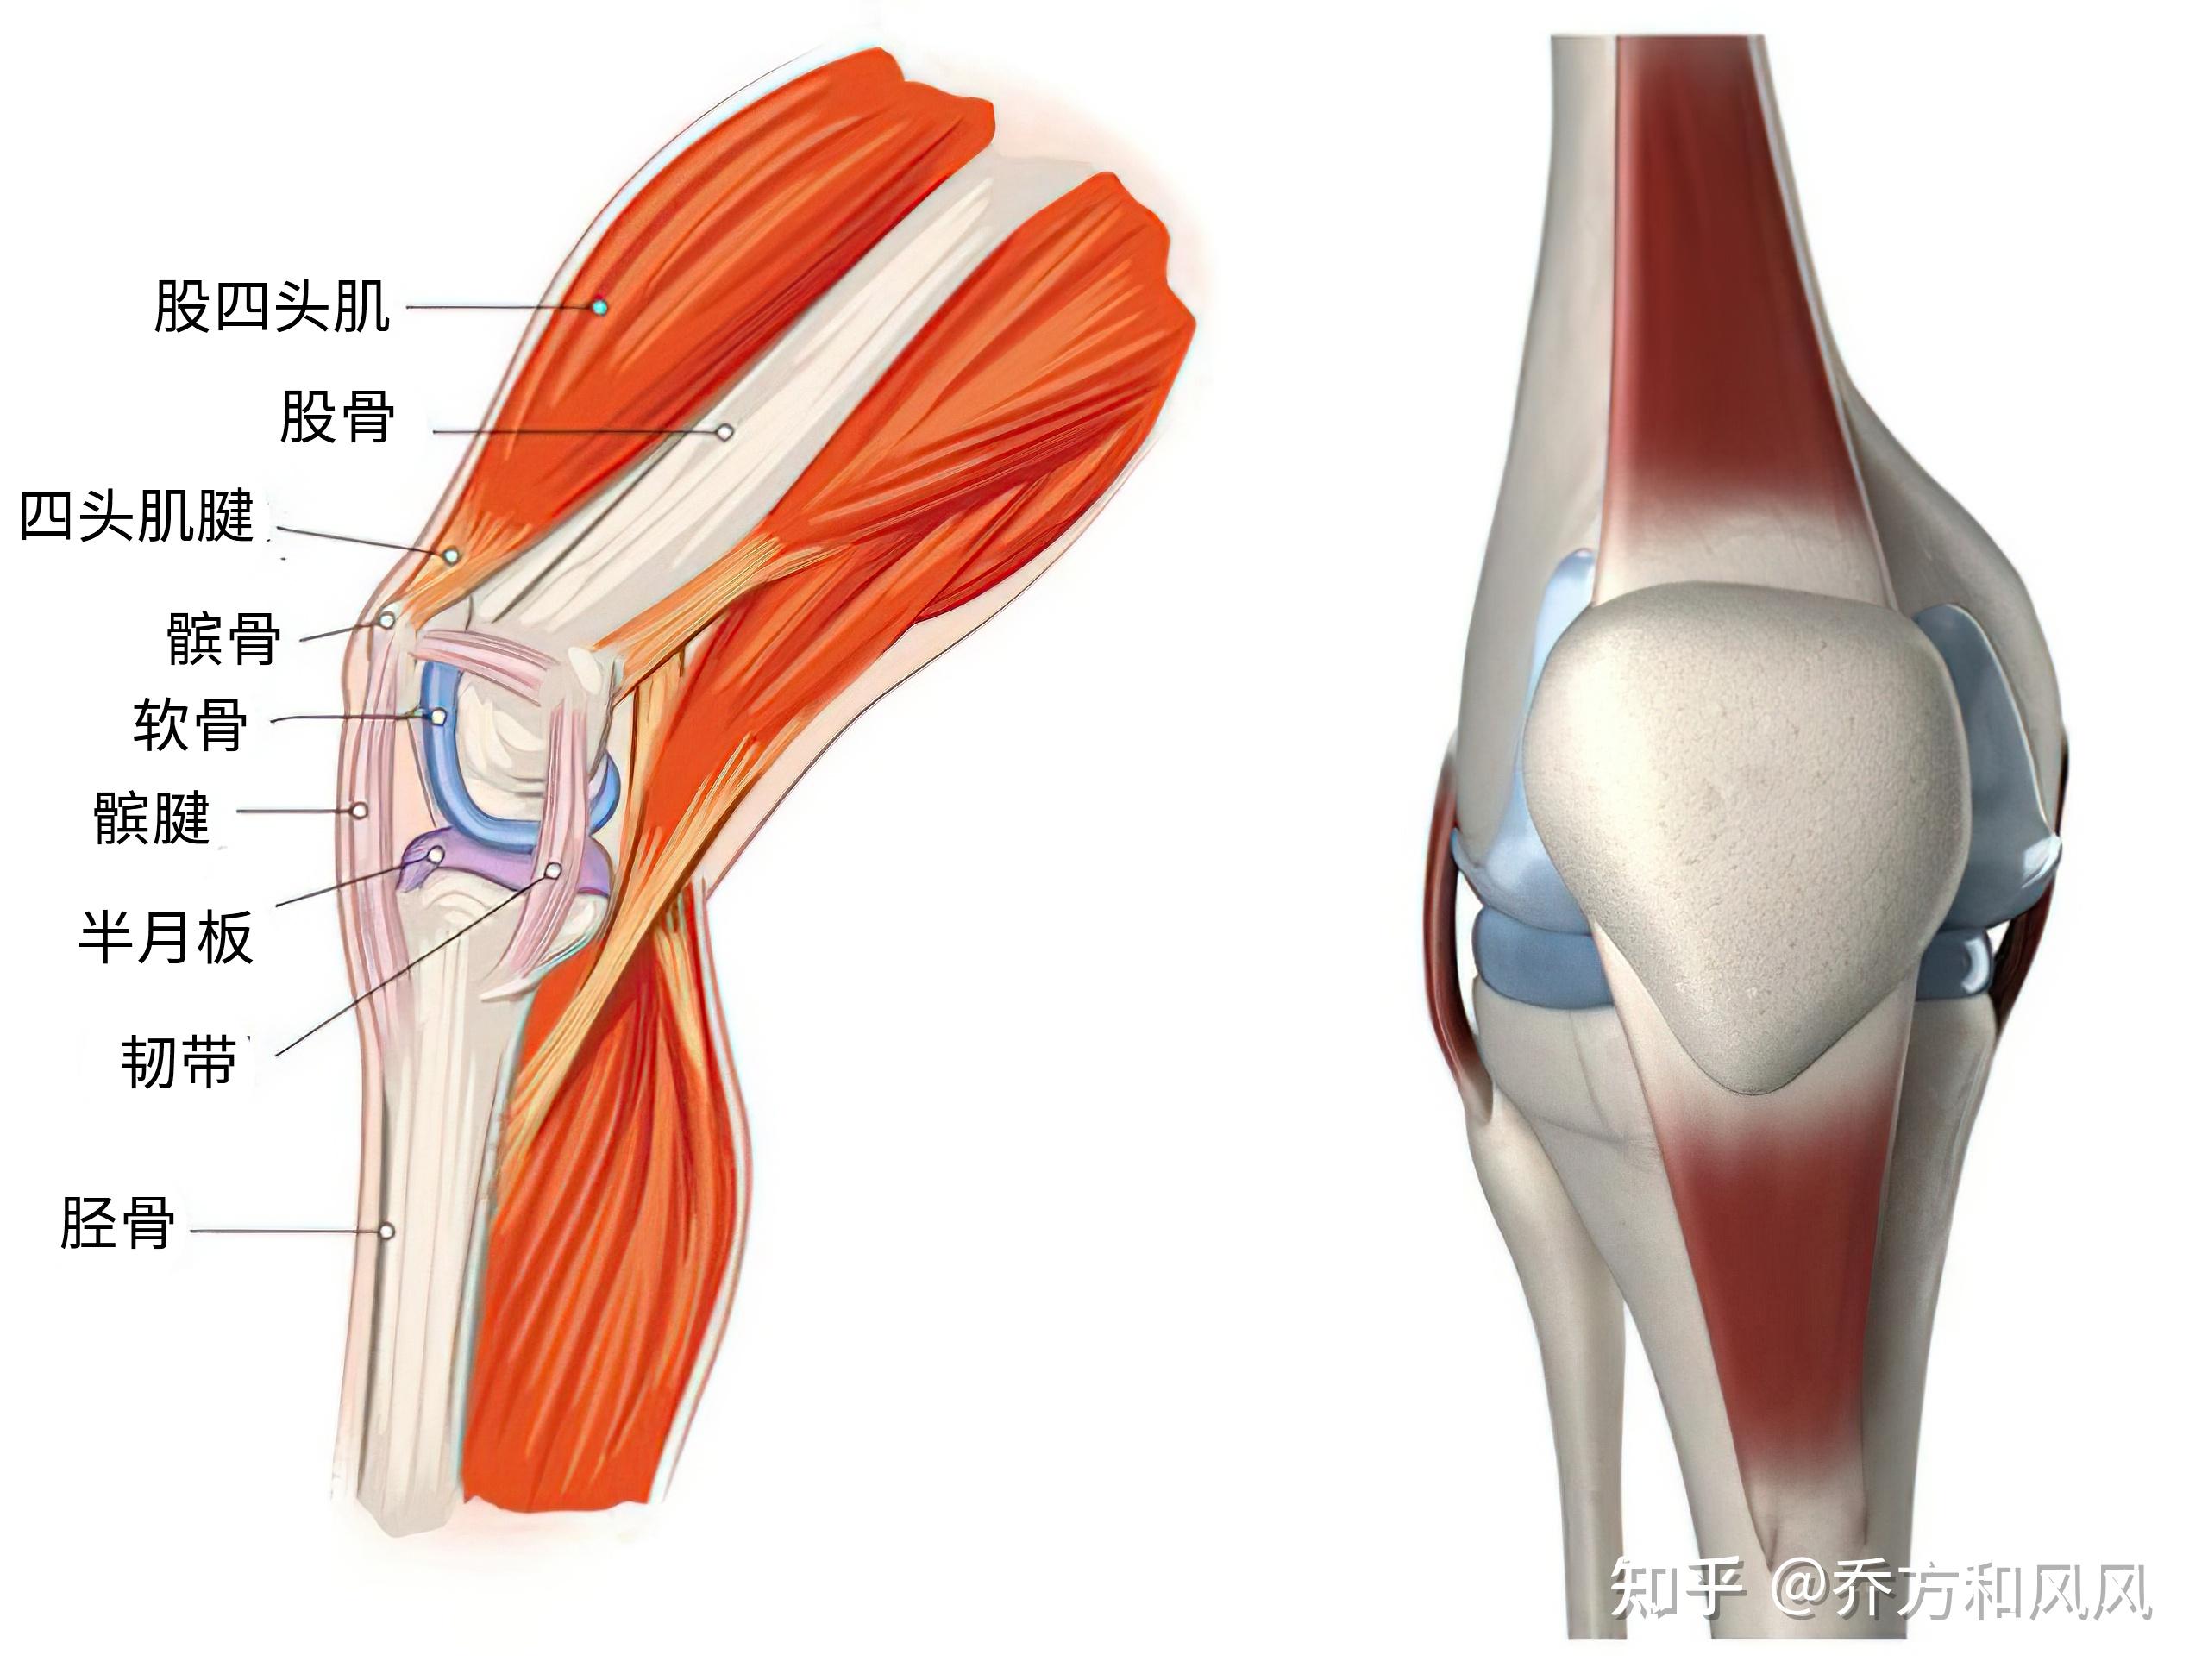 关节囊,半月板和肌肉肌腱,如果这些组织发生了损伤,膝关节的稳定性